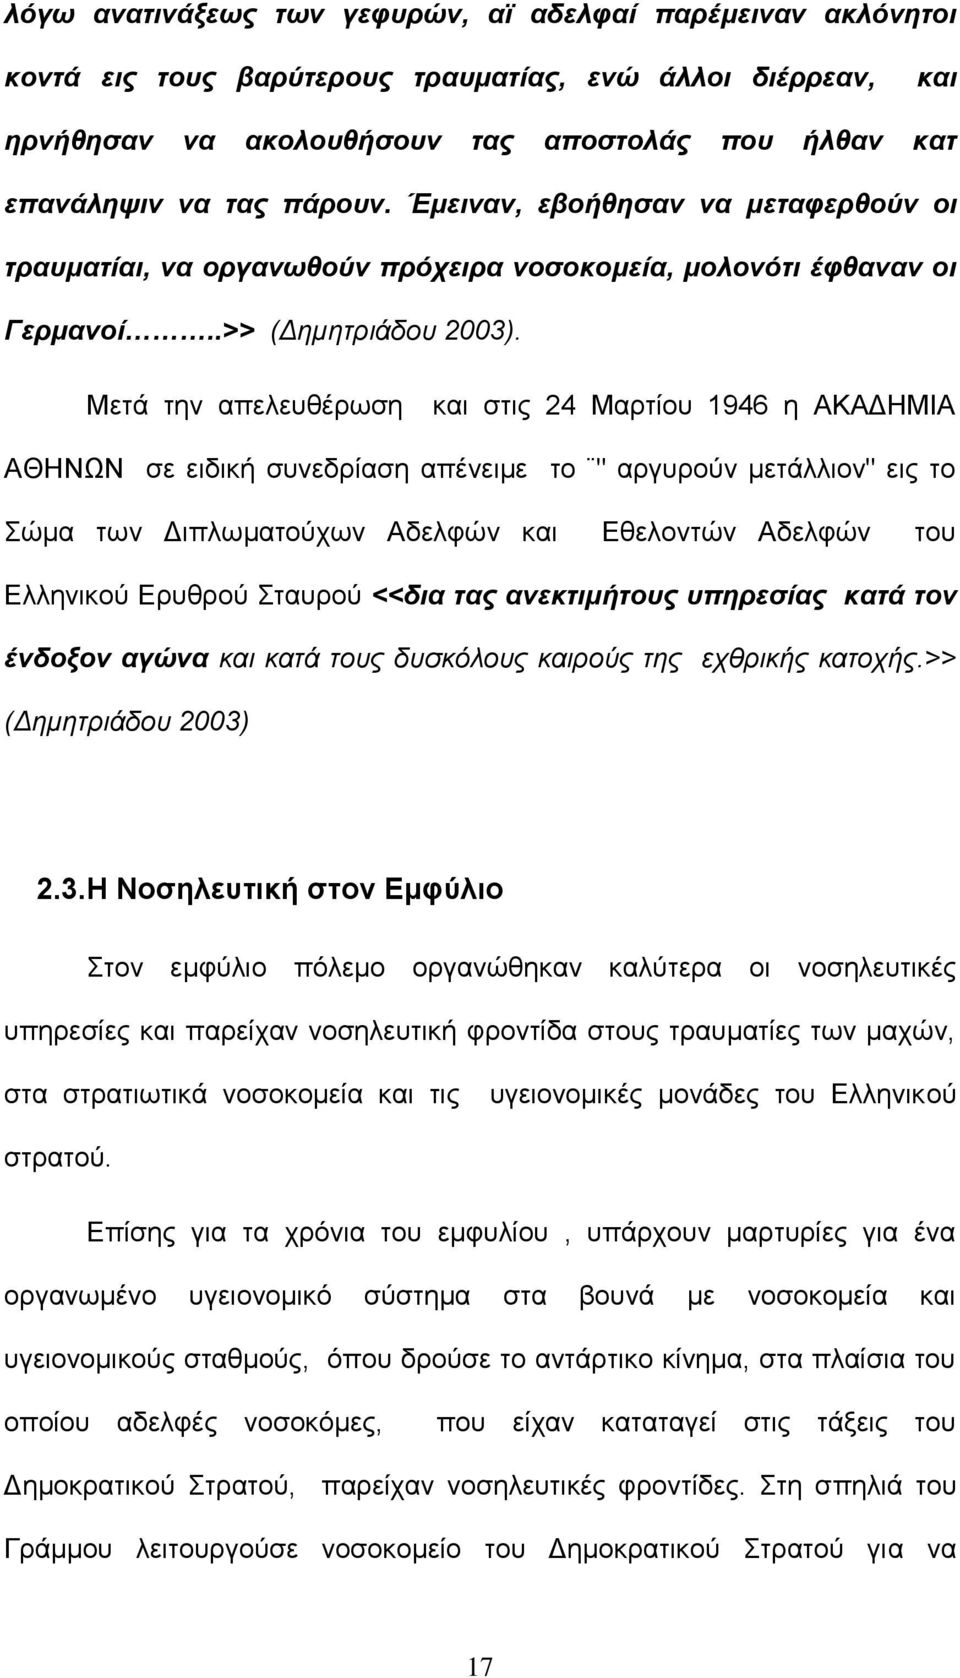 Μετά την απελευθέρωση και στις 24 Μαρτίου 1946 η ΑΚΑΔΗΜΙΑ ΑΘΗΝΩΝ σε ειδική συνεδρίαση απένειμε το " αργυρούν μετάλλιον" εις το Σώμα των Διπλωματούχων Αδελφών και Εθελοντών Αδελφών του Ελληνικού